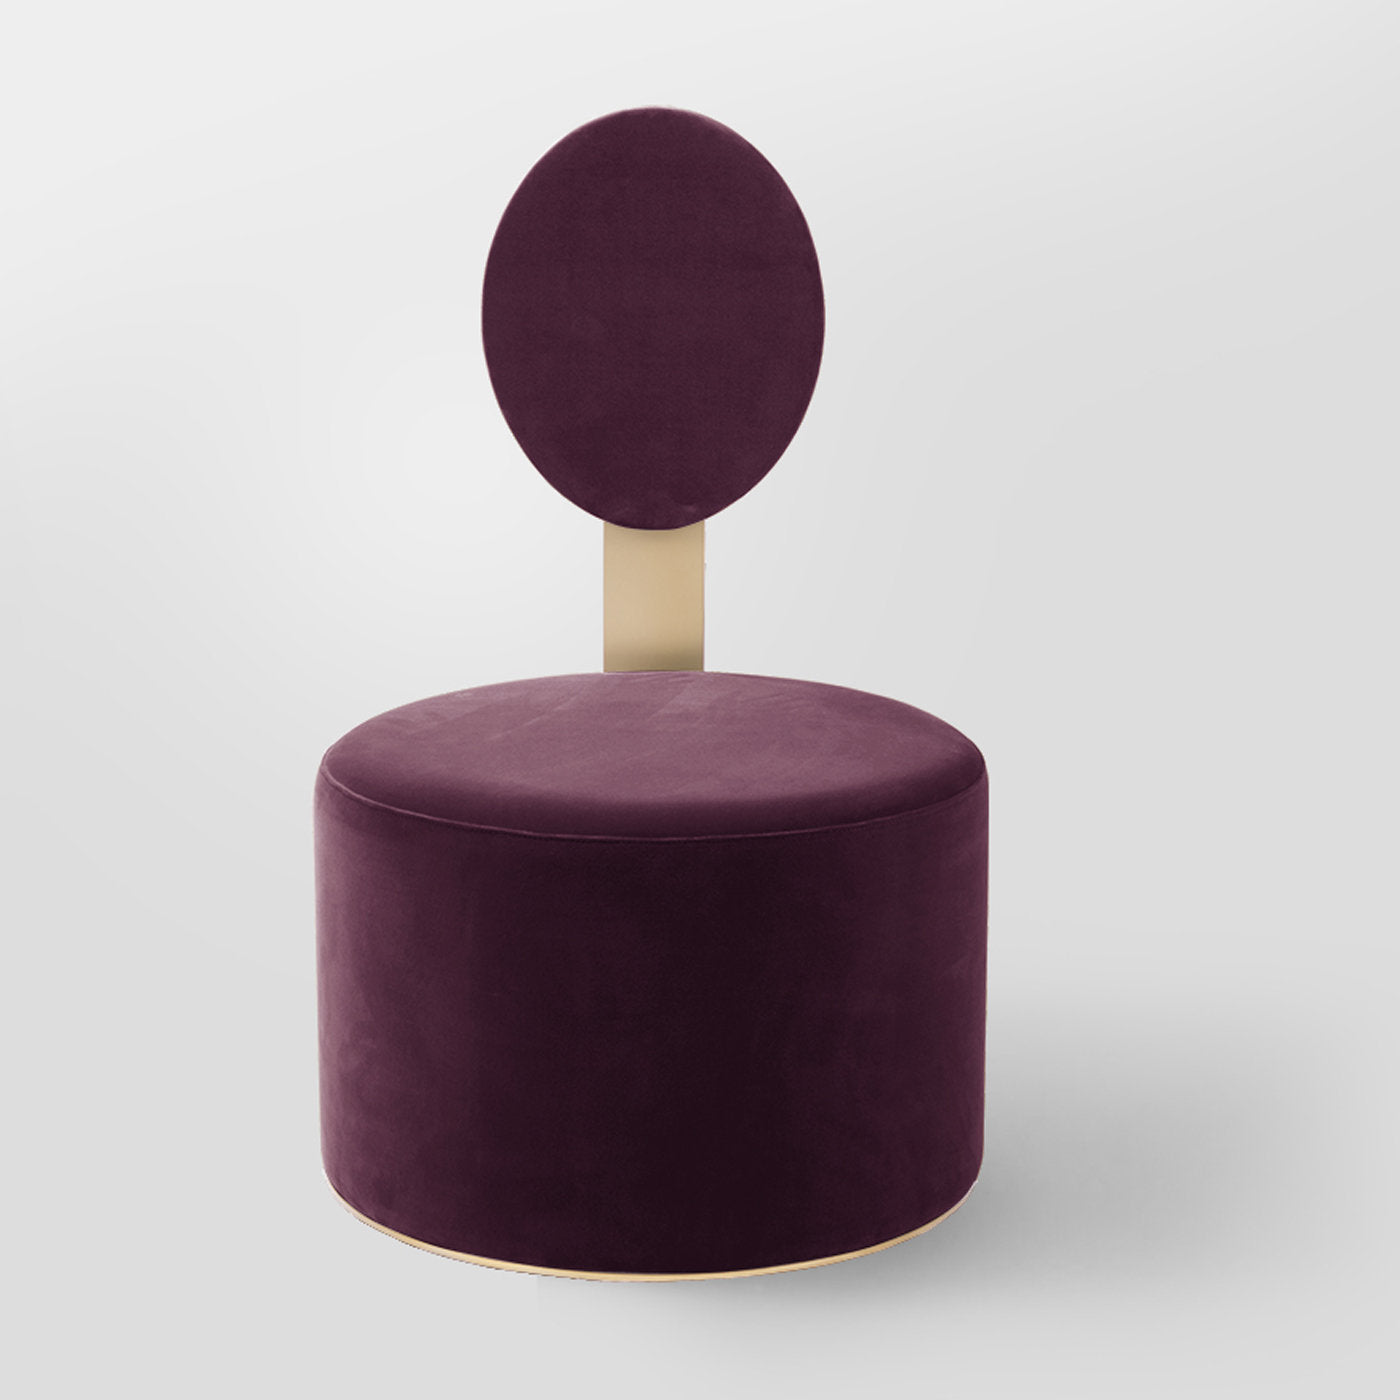 Pop Purple Chair by Artefatto Design Studio - Alternative view 1